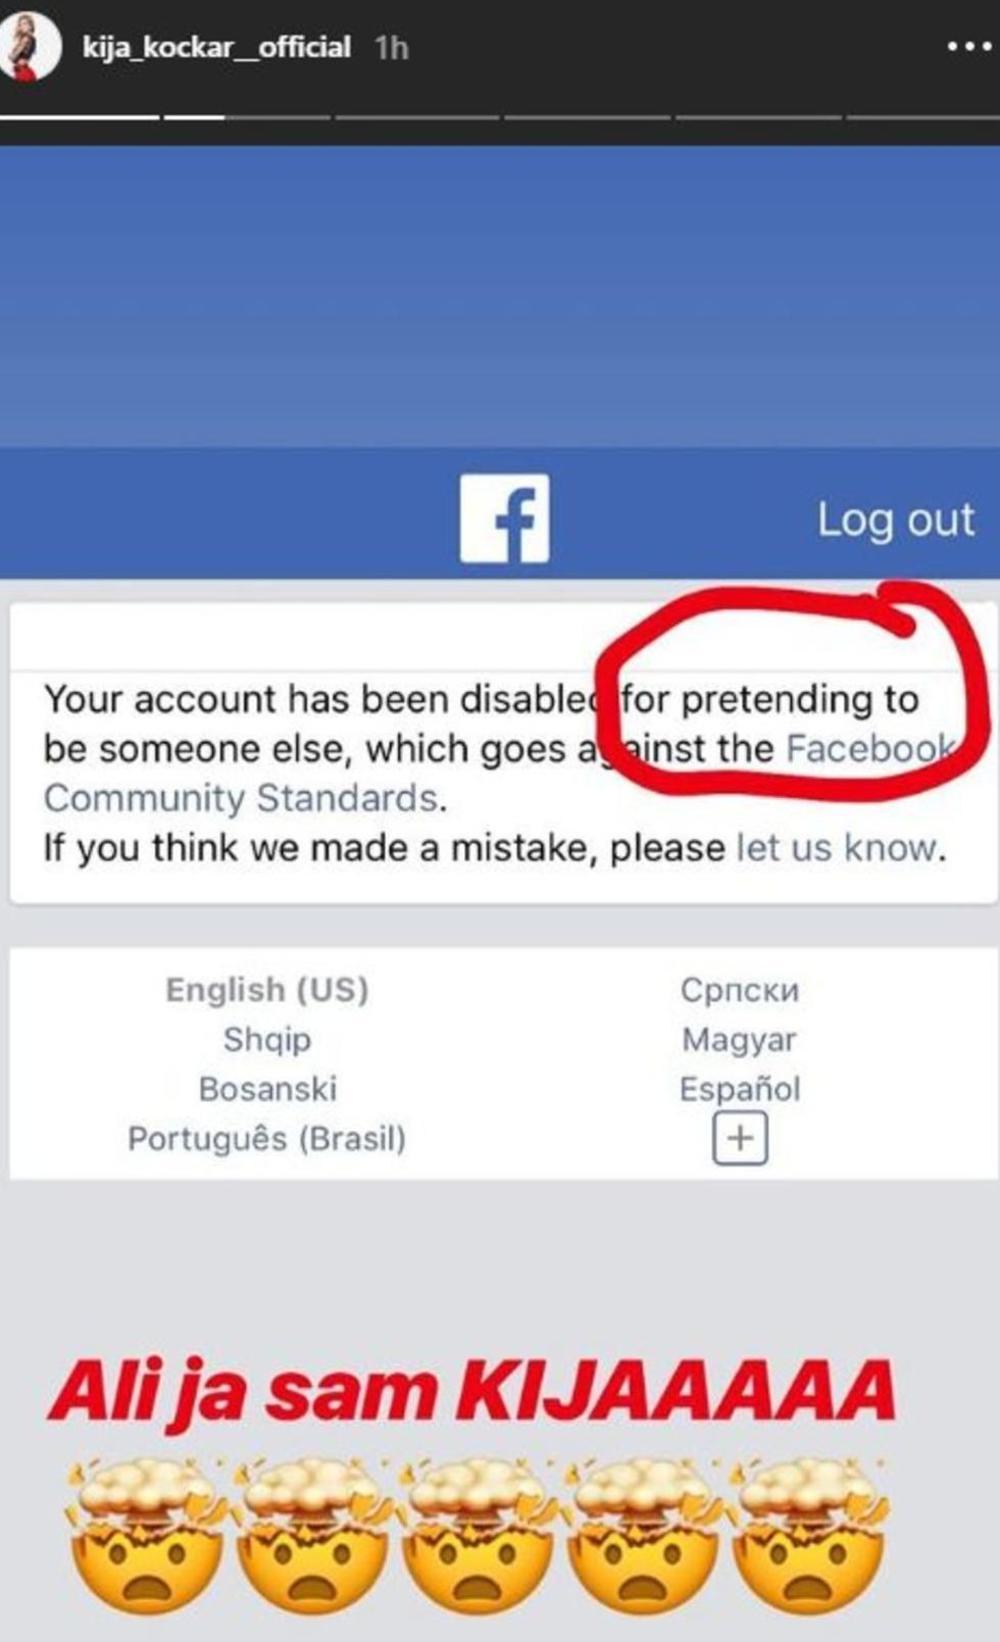 Fejsbuk ne veruje Kiji da je to ona  